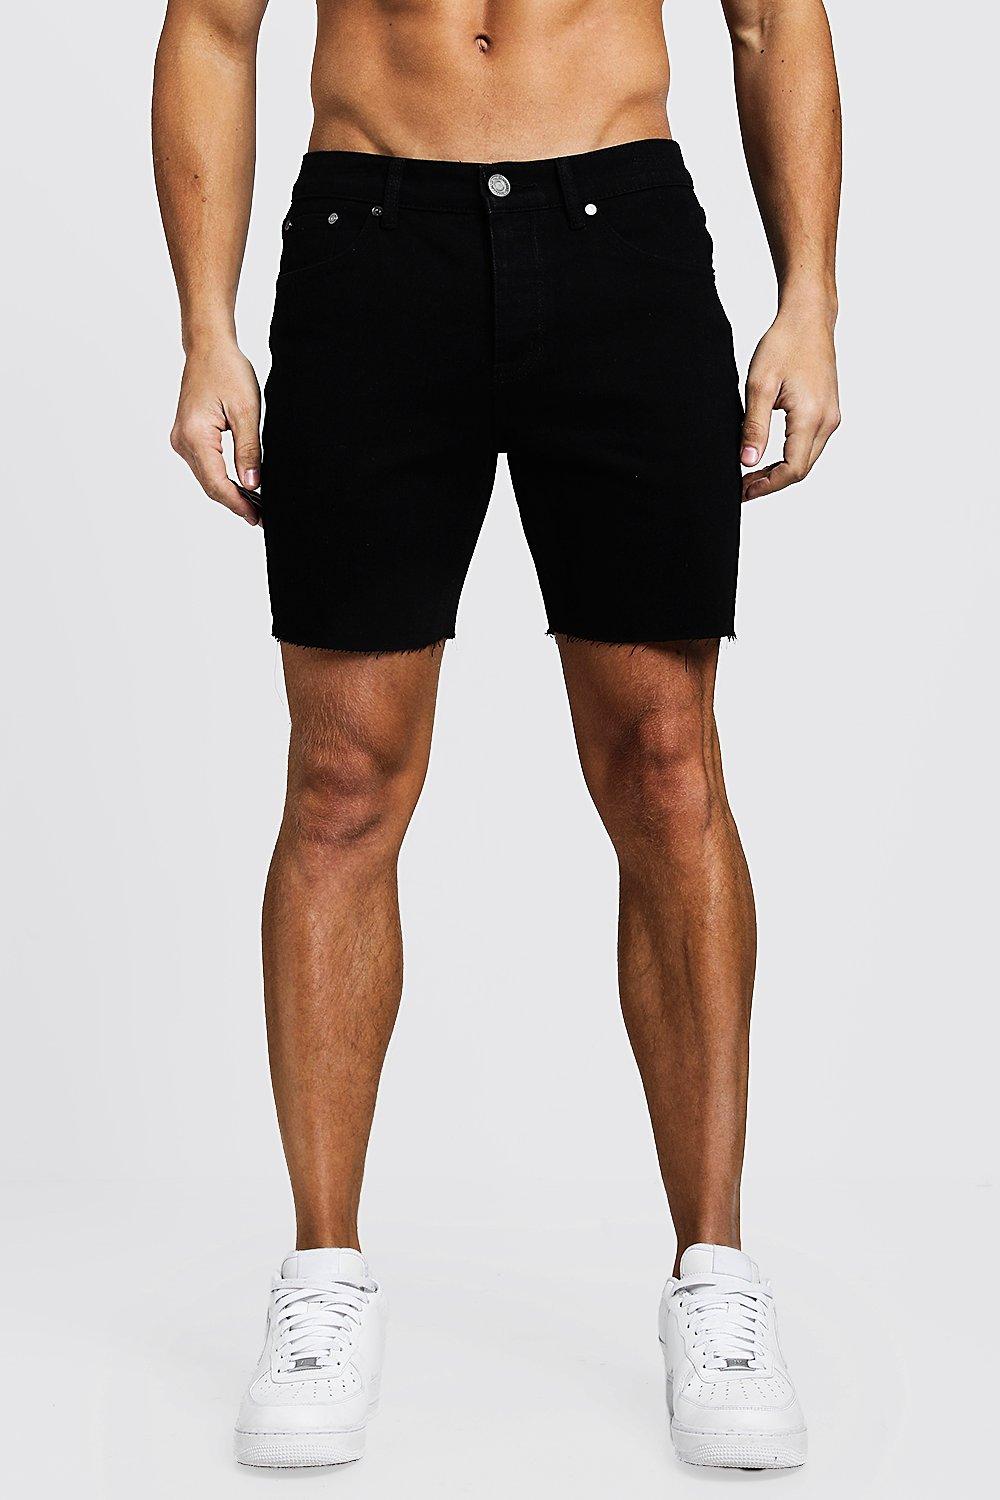 black slim shorts